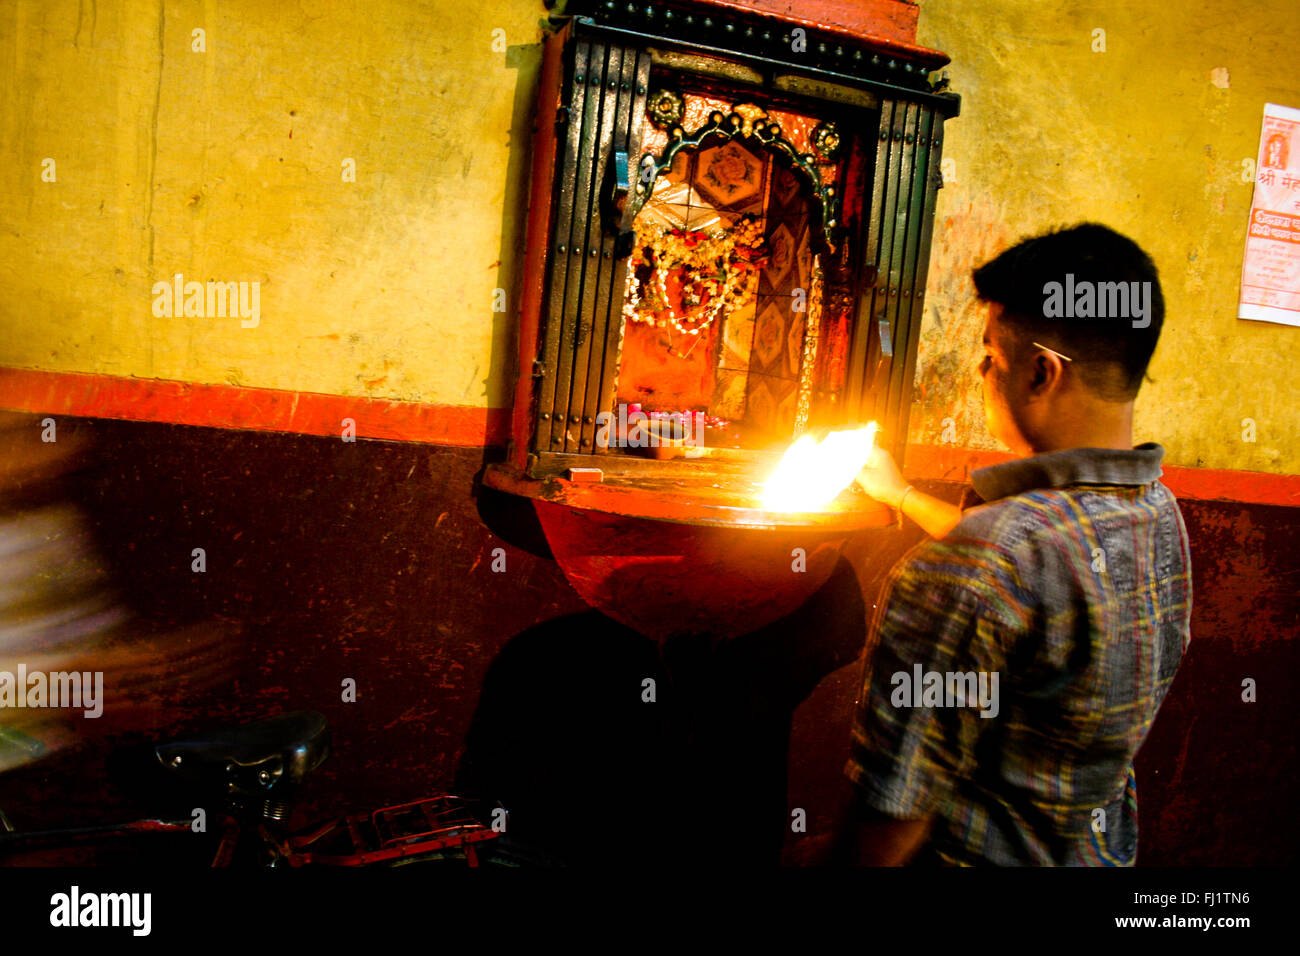 L'homme hindou priant dans le temple dans une rue étroite de Varanasi, Inde Banque D'Images